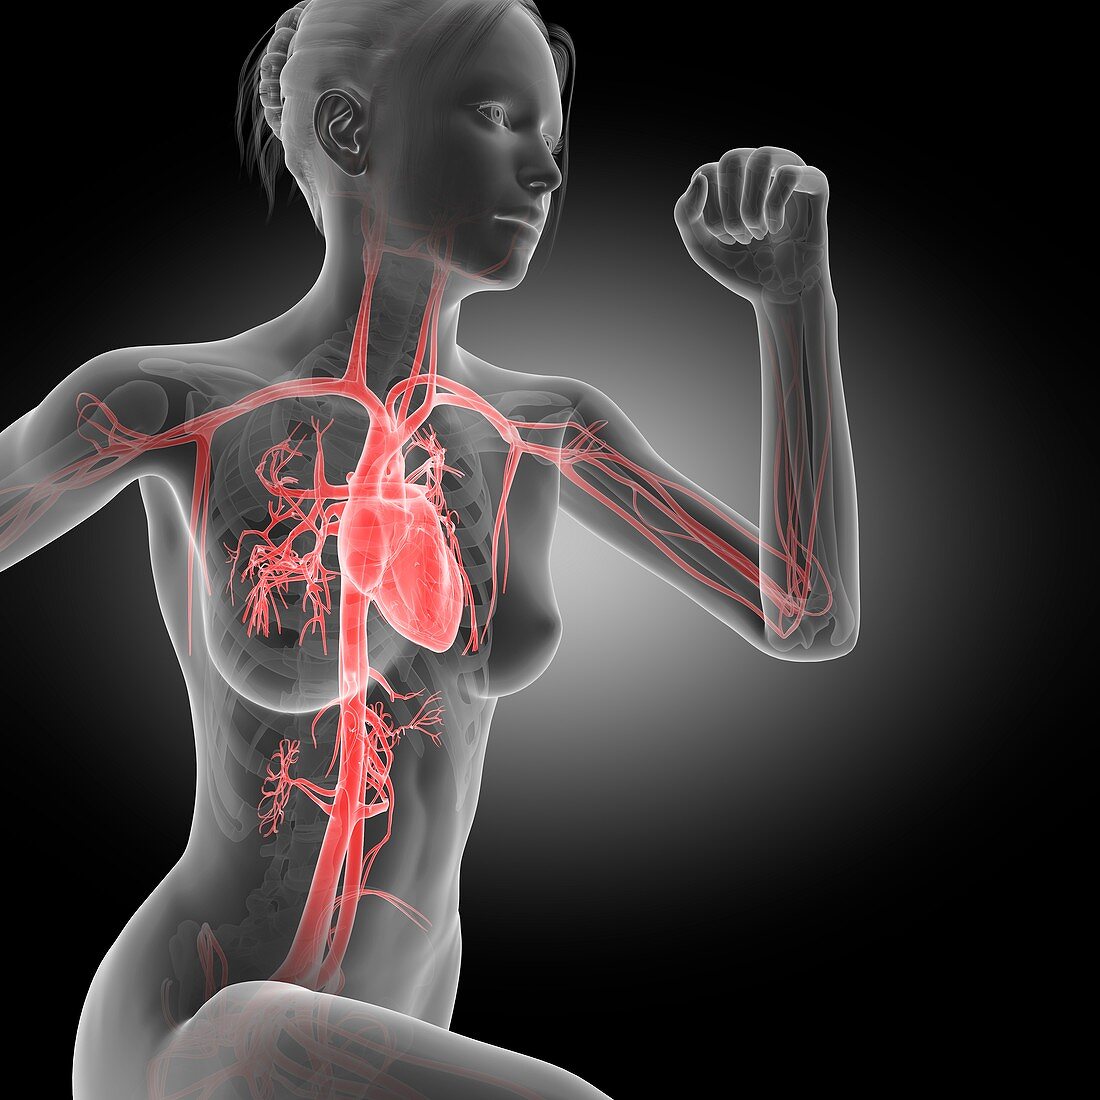 Vascular system of jogger,illustration